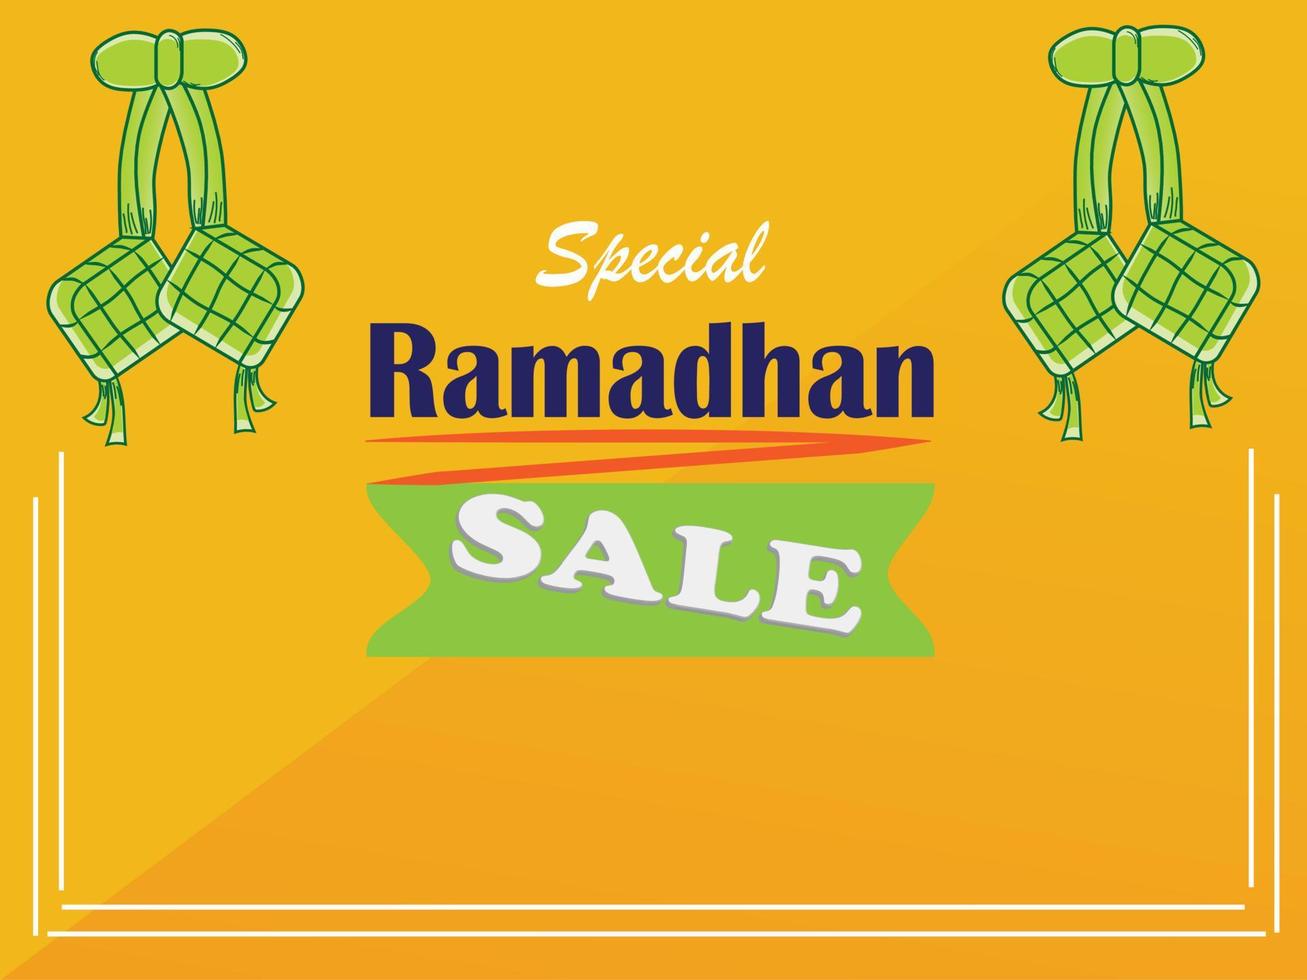 conception de promotion de modèle de bannière de vente ramadan, adaptée à la promotion web et aux médias sociaux, illustration vectorielle. vecteur